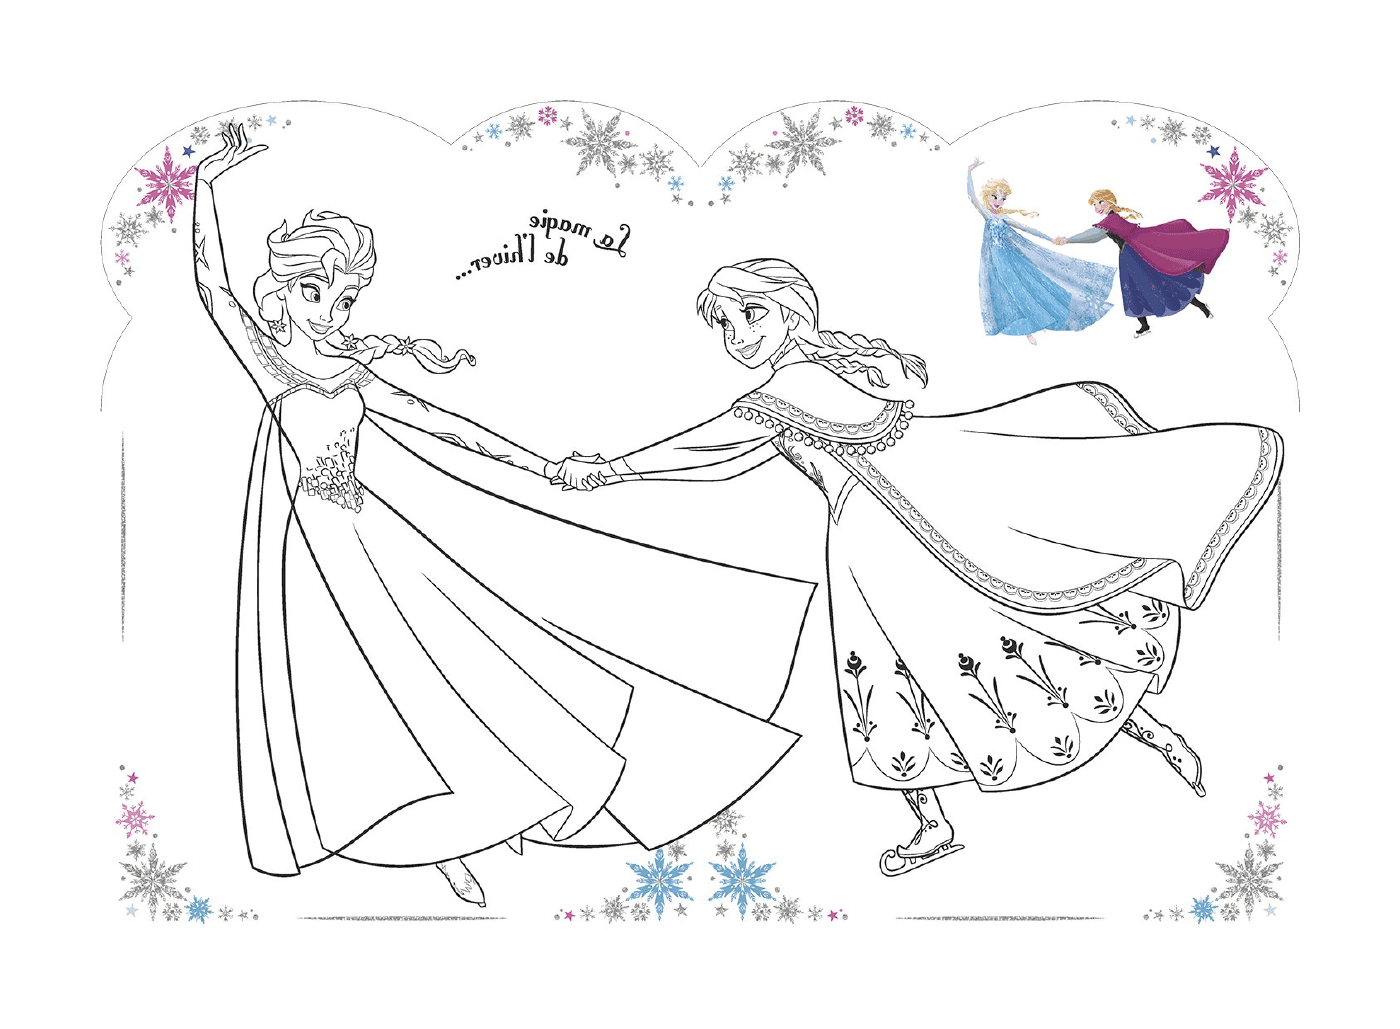  Волшебство зимы с Эльзой и Анной 